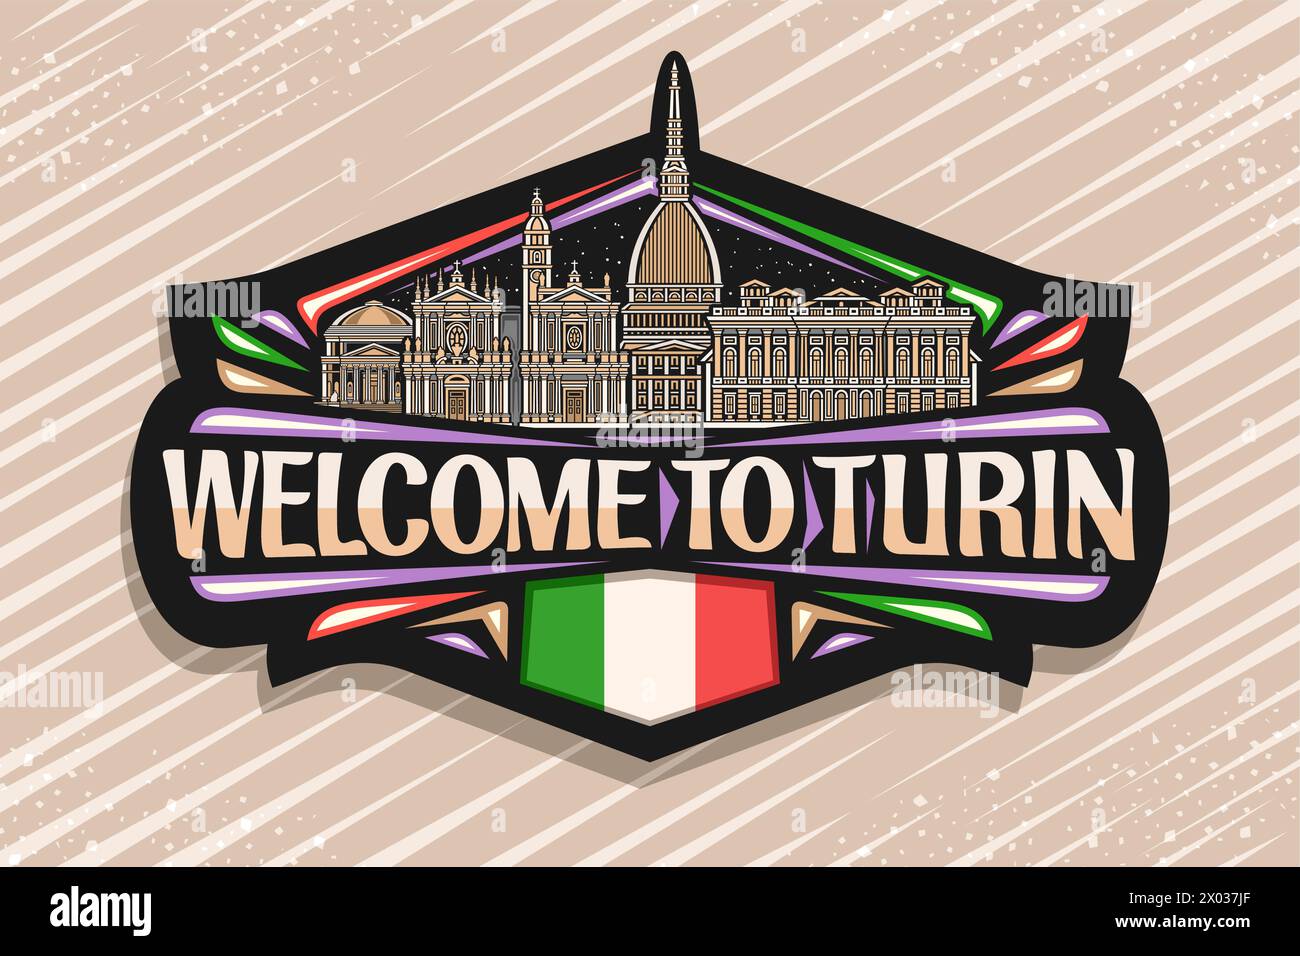 Vektor-Logo für Turin, schwarzer dekorativer Tag mit Umrissillustration des historischen Panorama turin Stadtlandschaft auf Dämmerung Himmel Hintergrund, Linie Art Design Stock Vektor